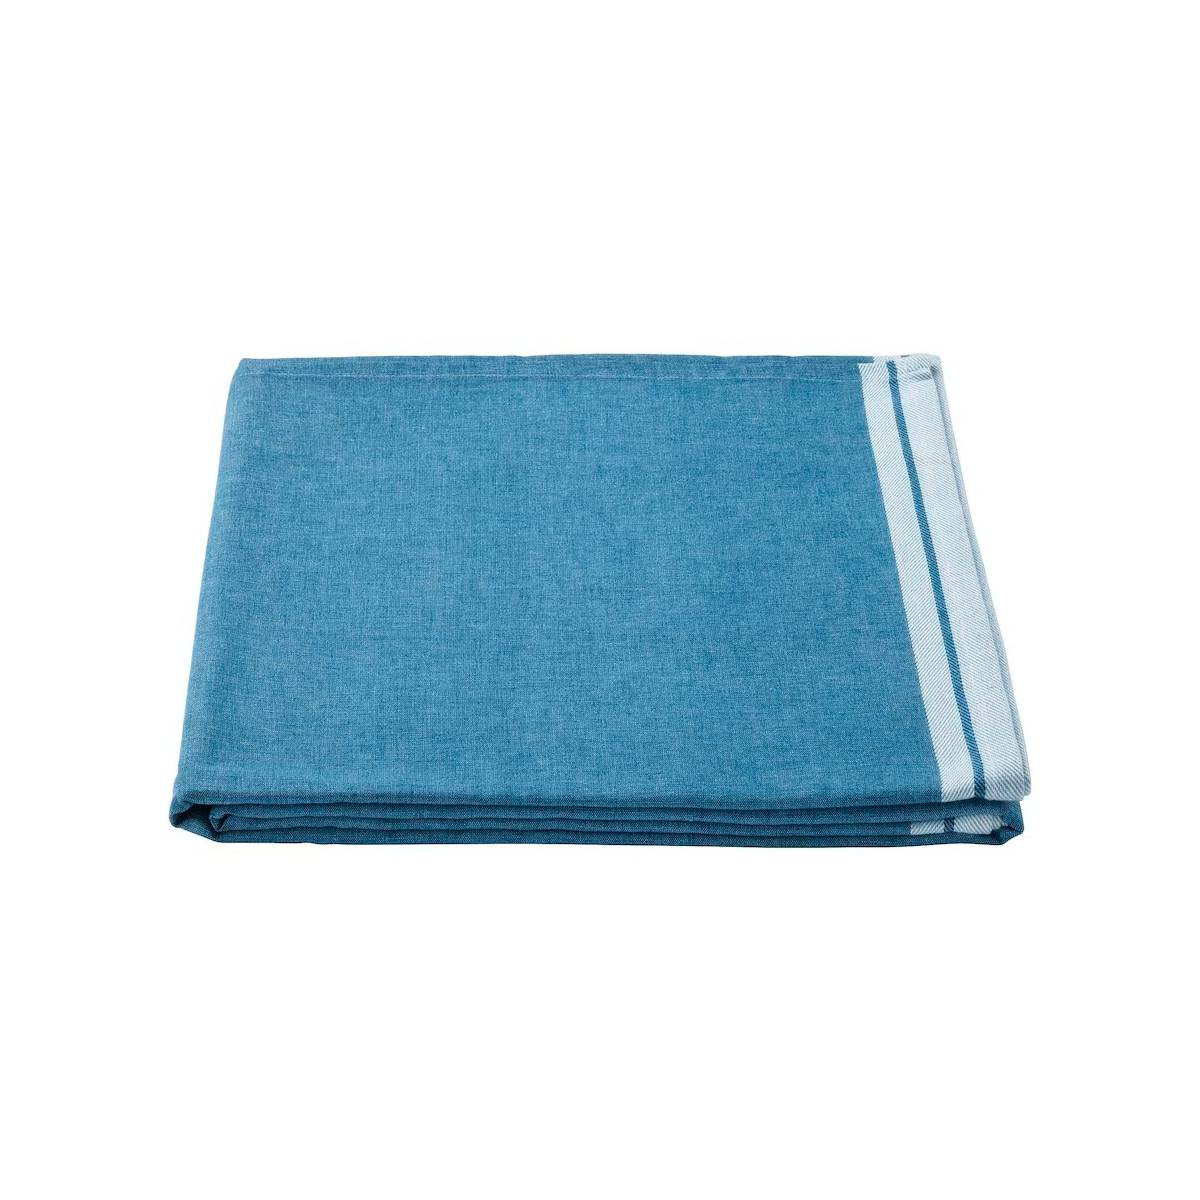 Accesorios de exterior: mantel de color azul de Ikea. 